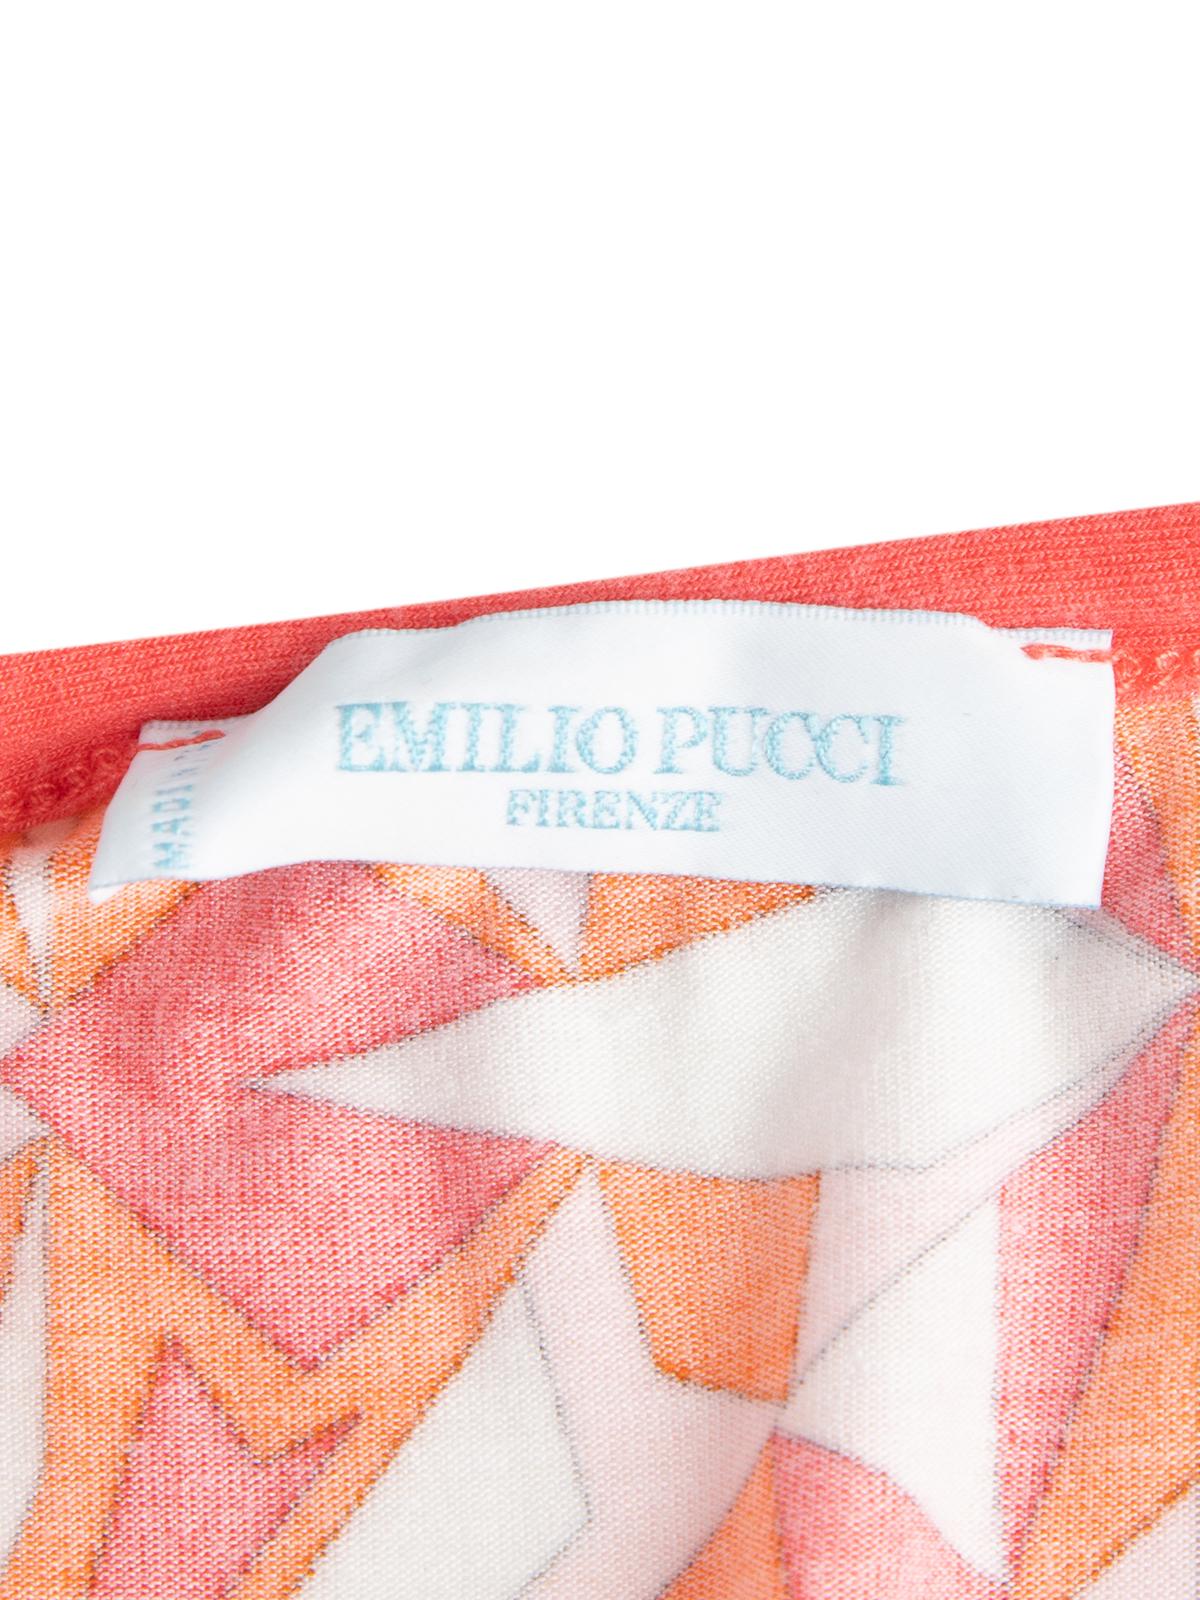 Pre-Loved Emilio Pucci Women's Multicoloured Tank Top For Sale 2